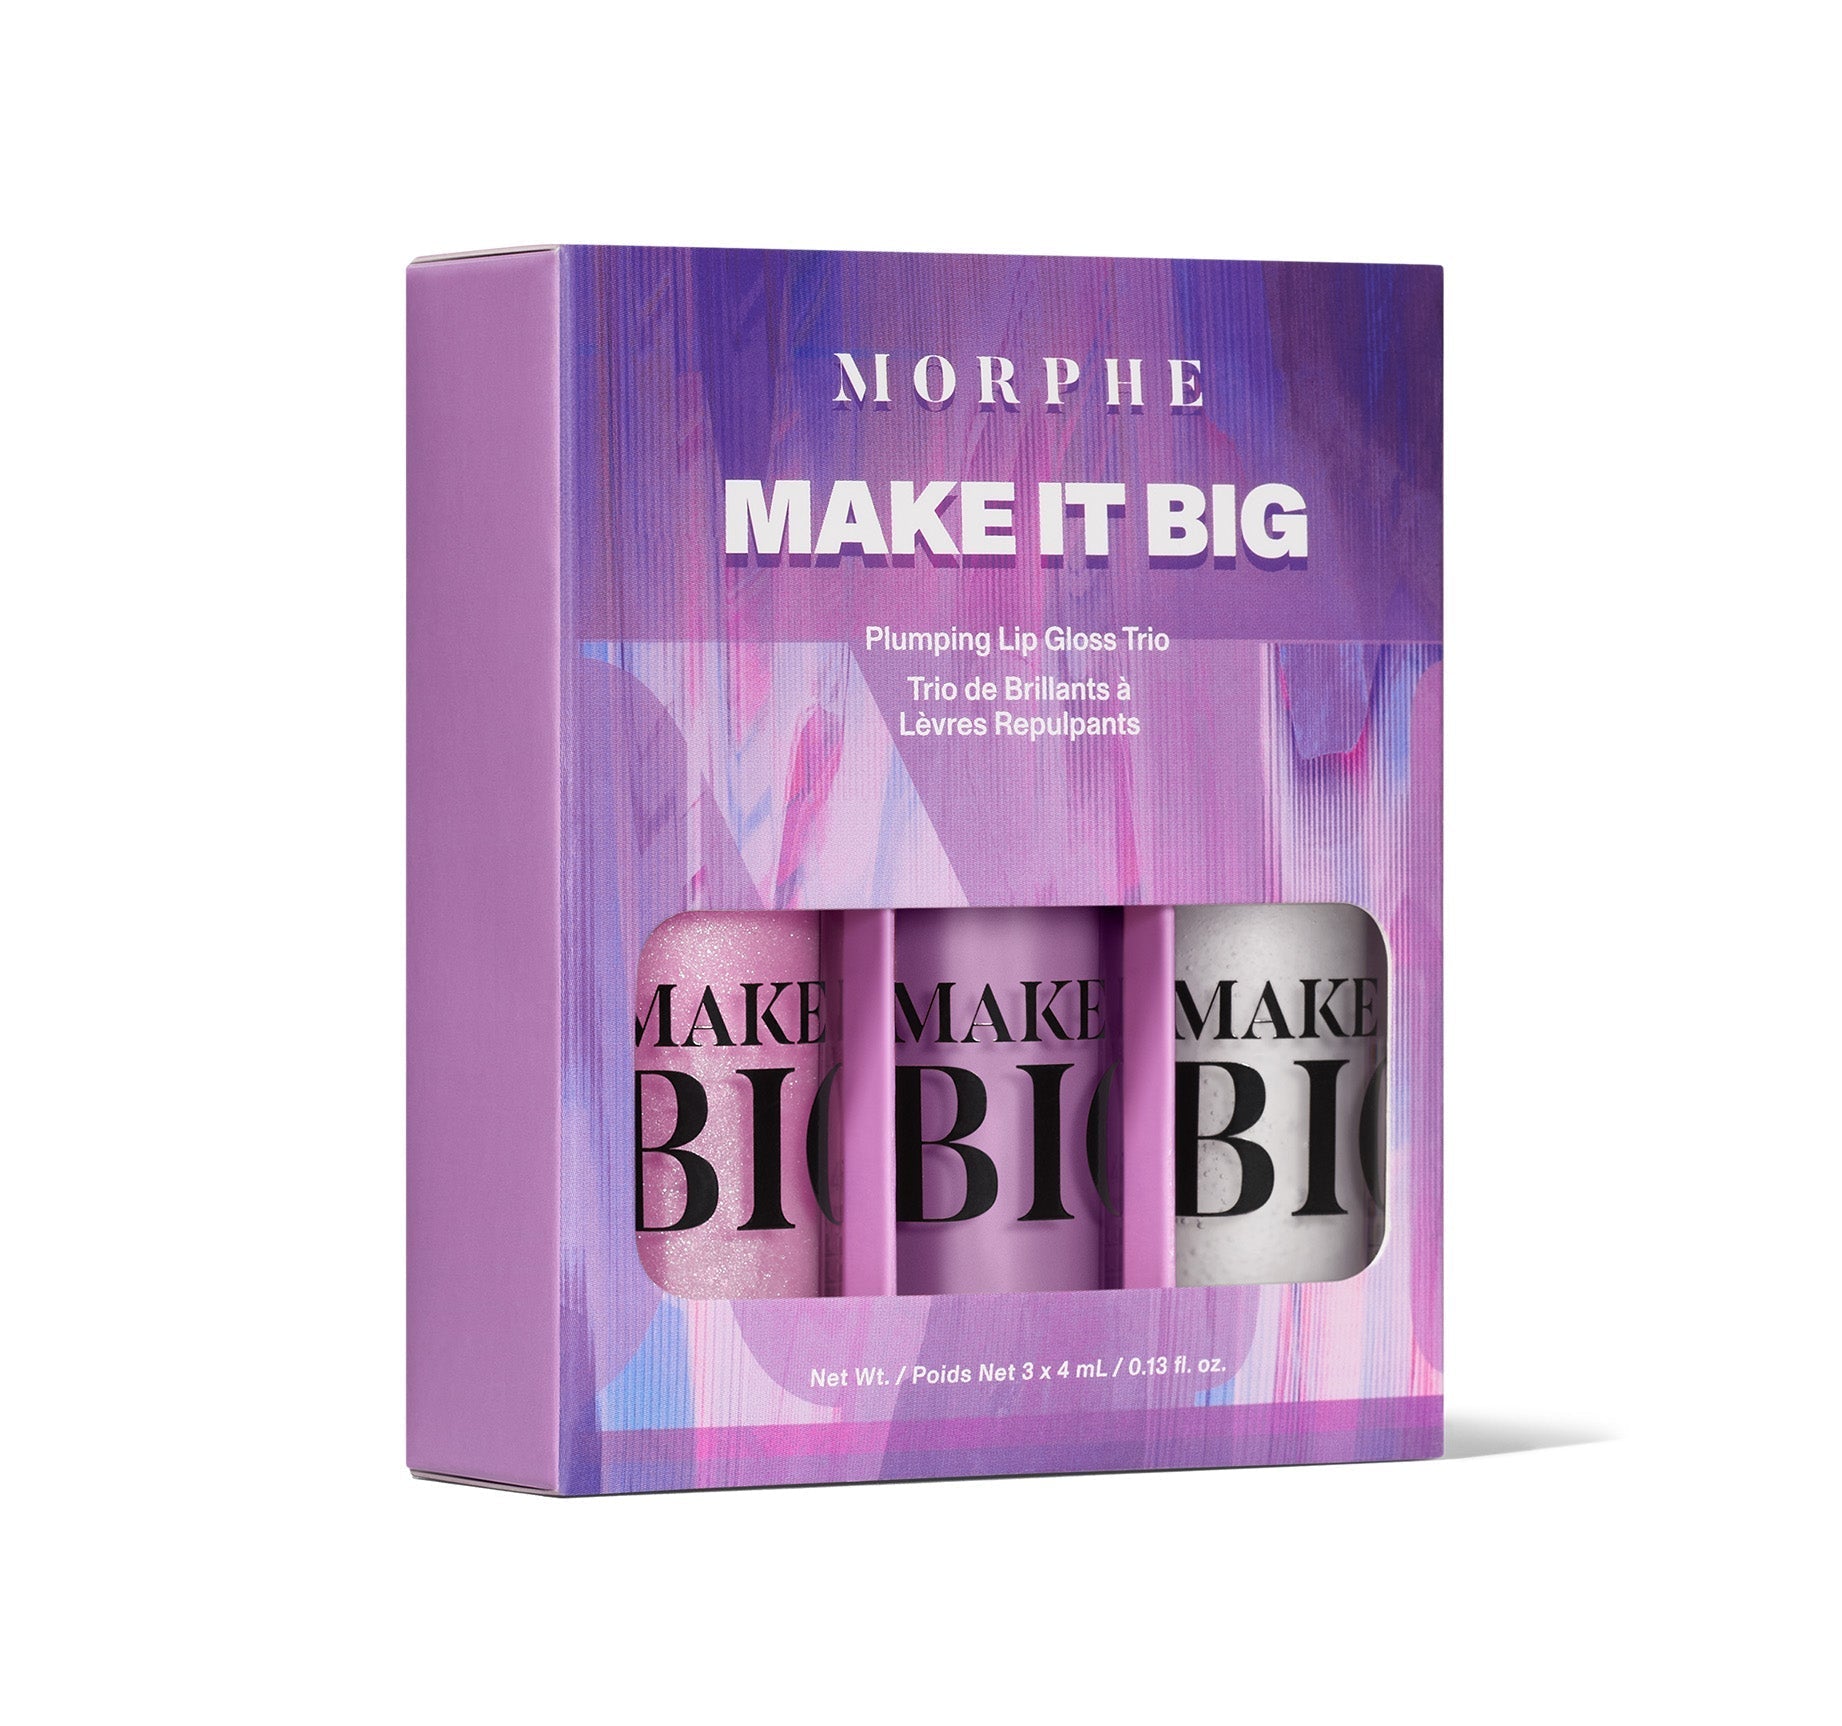 Morphe Make It Big Plumping Lip Gloss